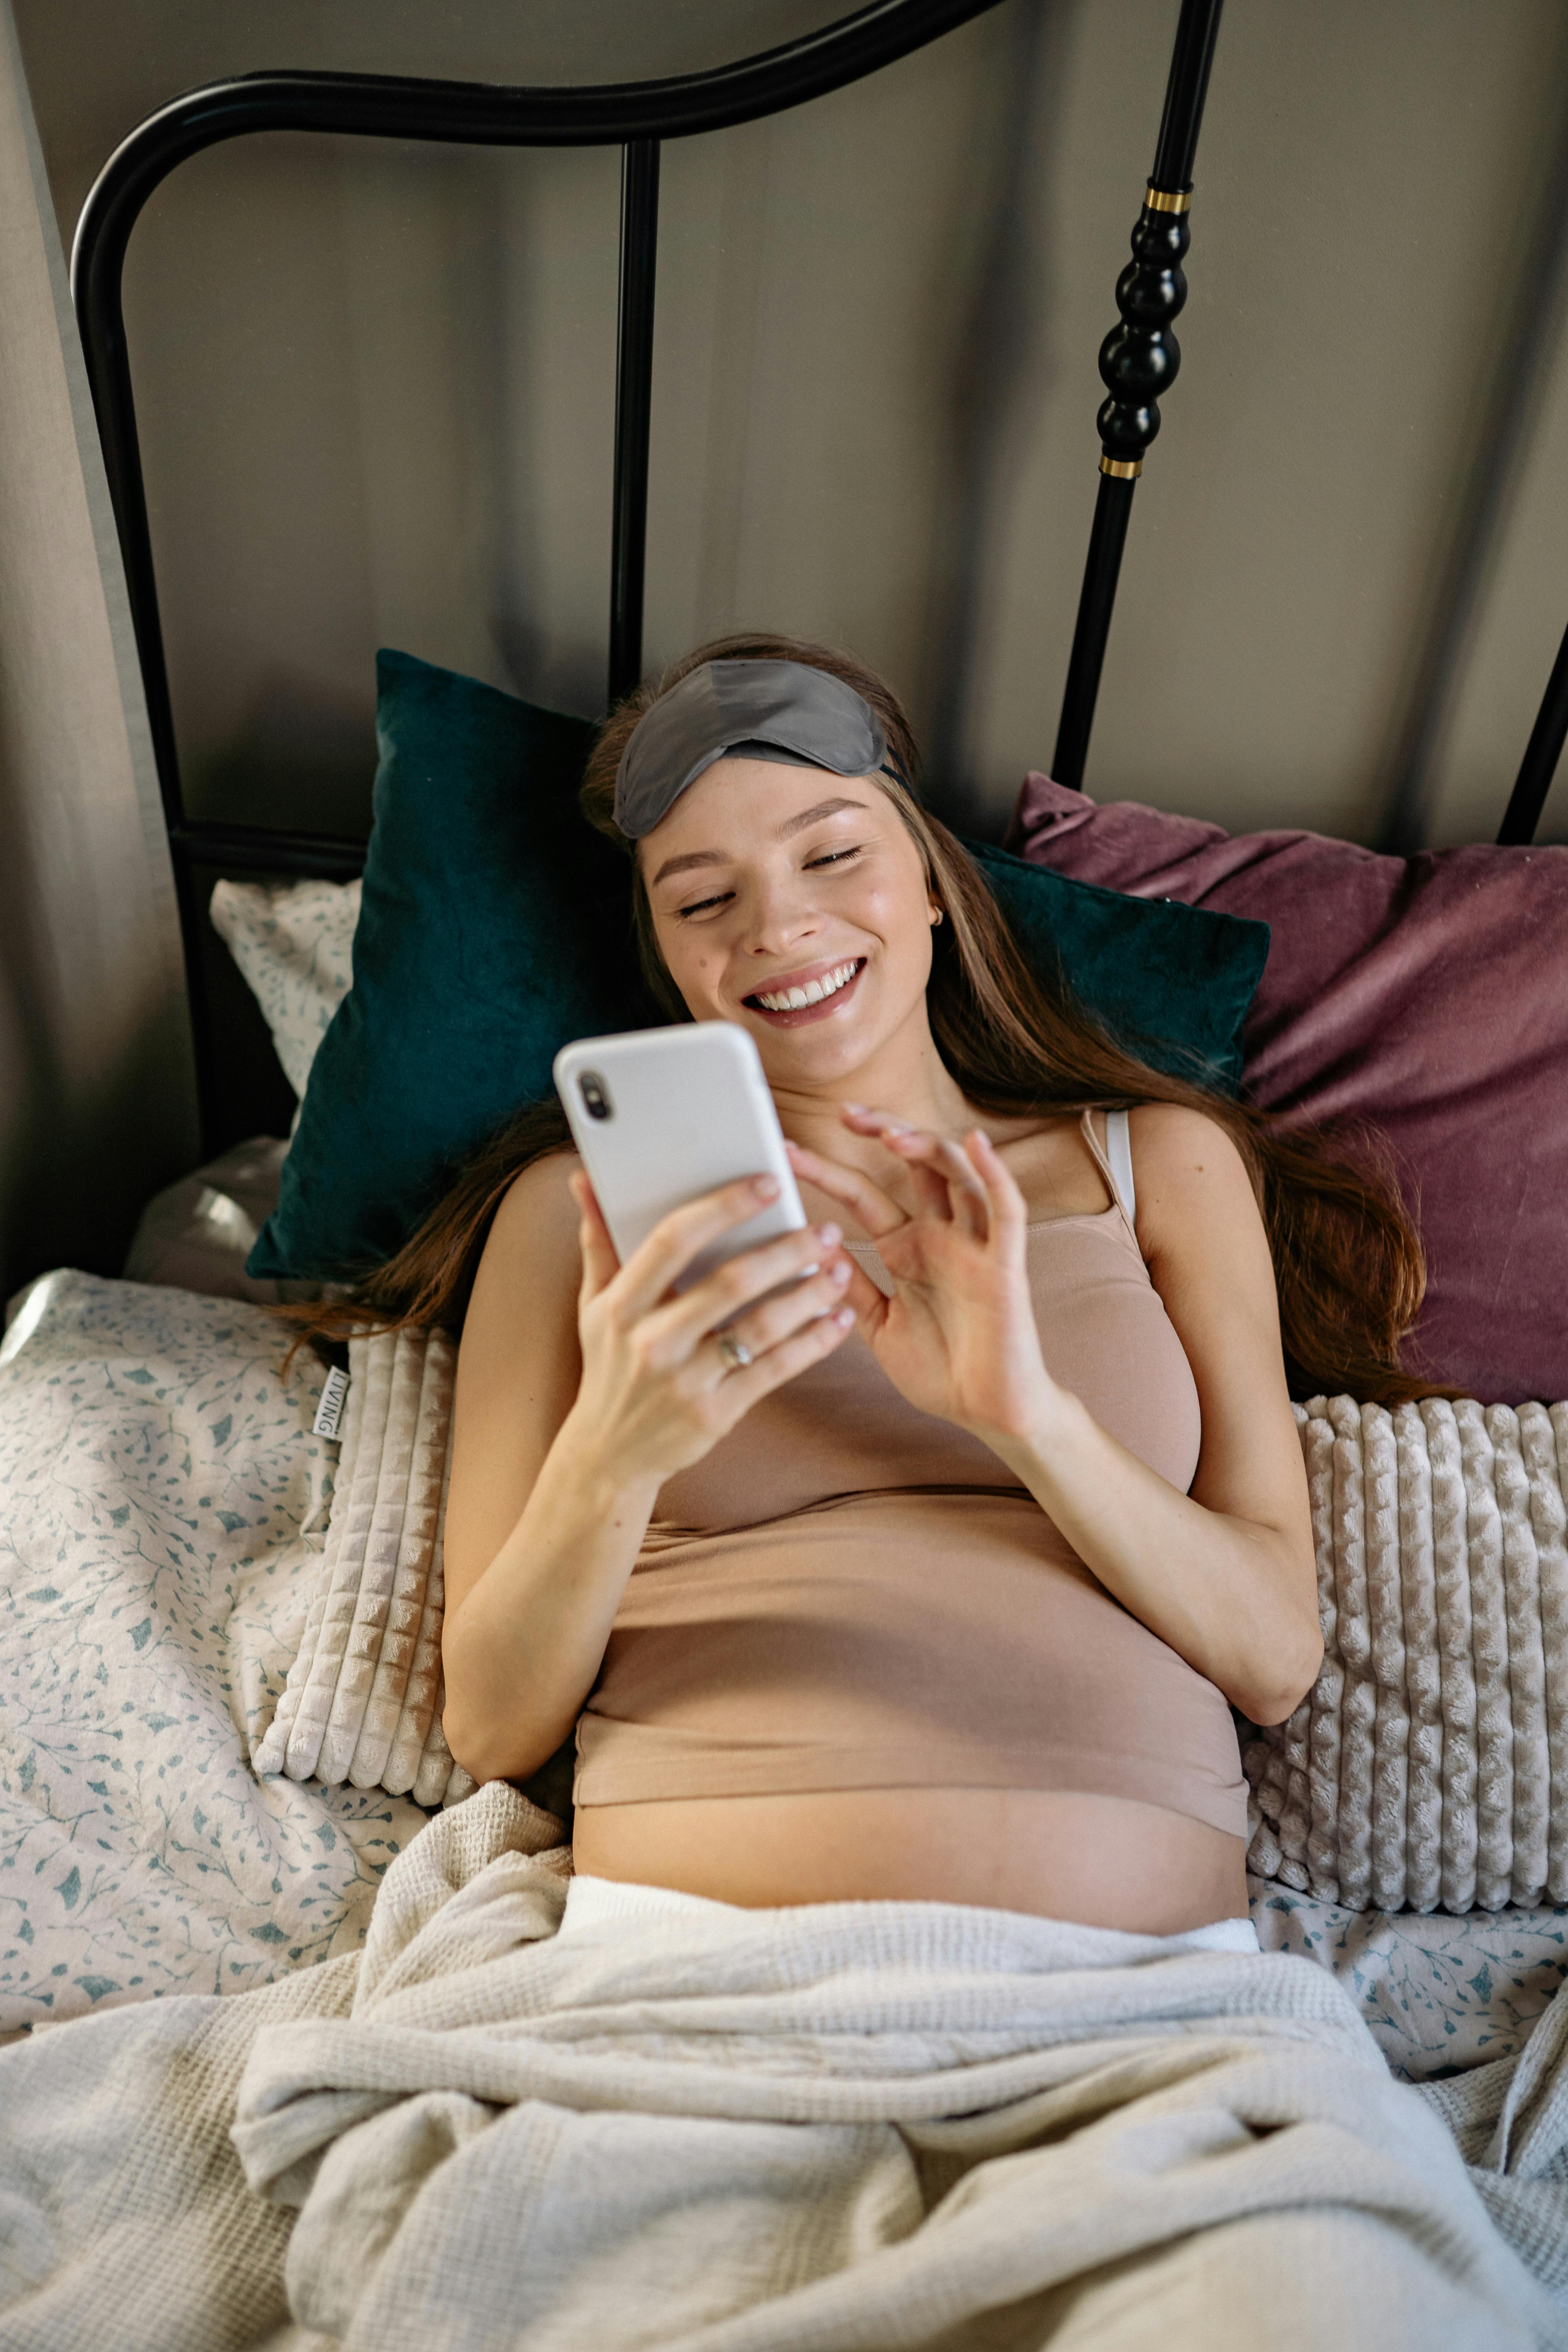 Une femme enceinte souriante lisant son téléphone au lit | Source : Pexels